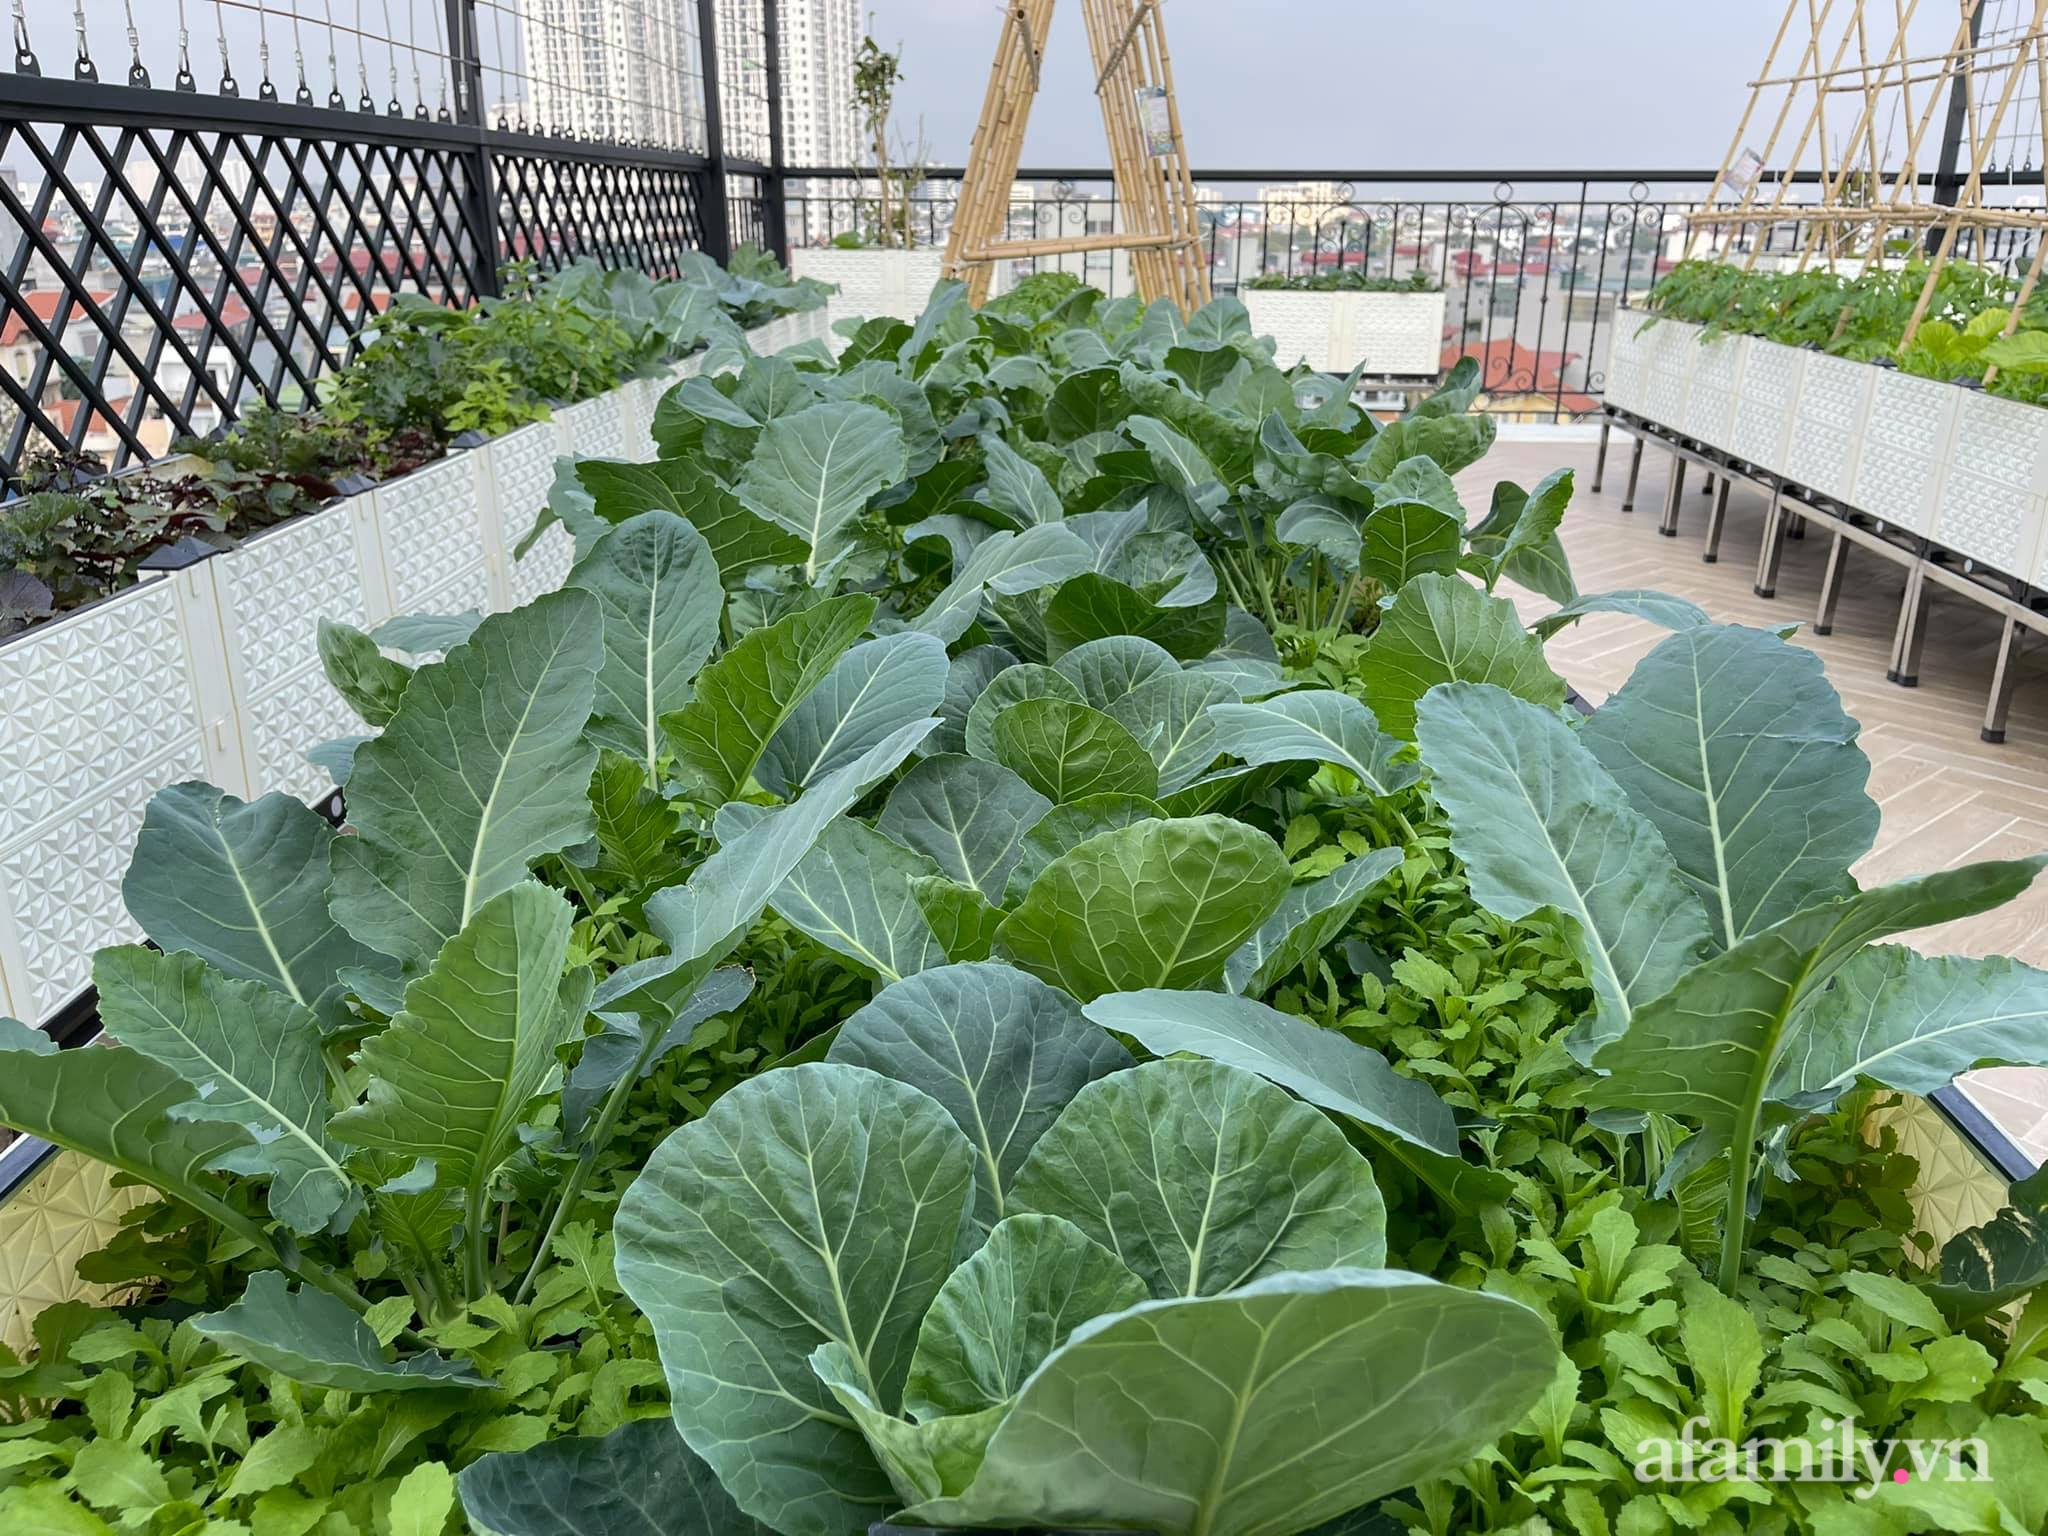 Sân thượng 83m² phủ kín rau quả sạch chỉ sau gần 1 tháng gieo trồng của cô giáo về hưu ở Hà Nội - Ảnh 2.